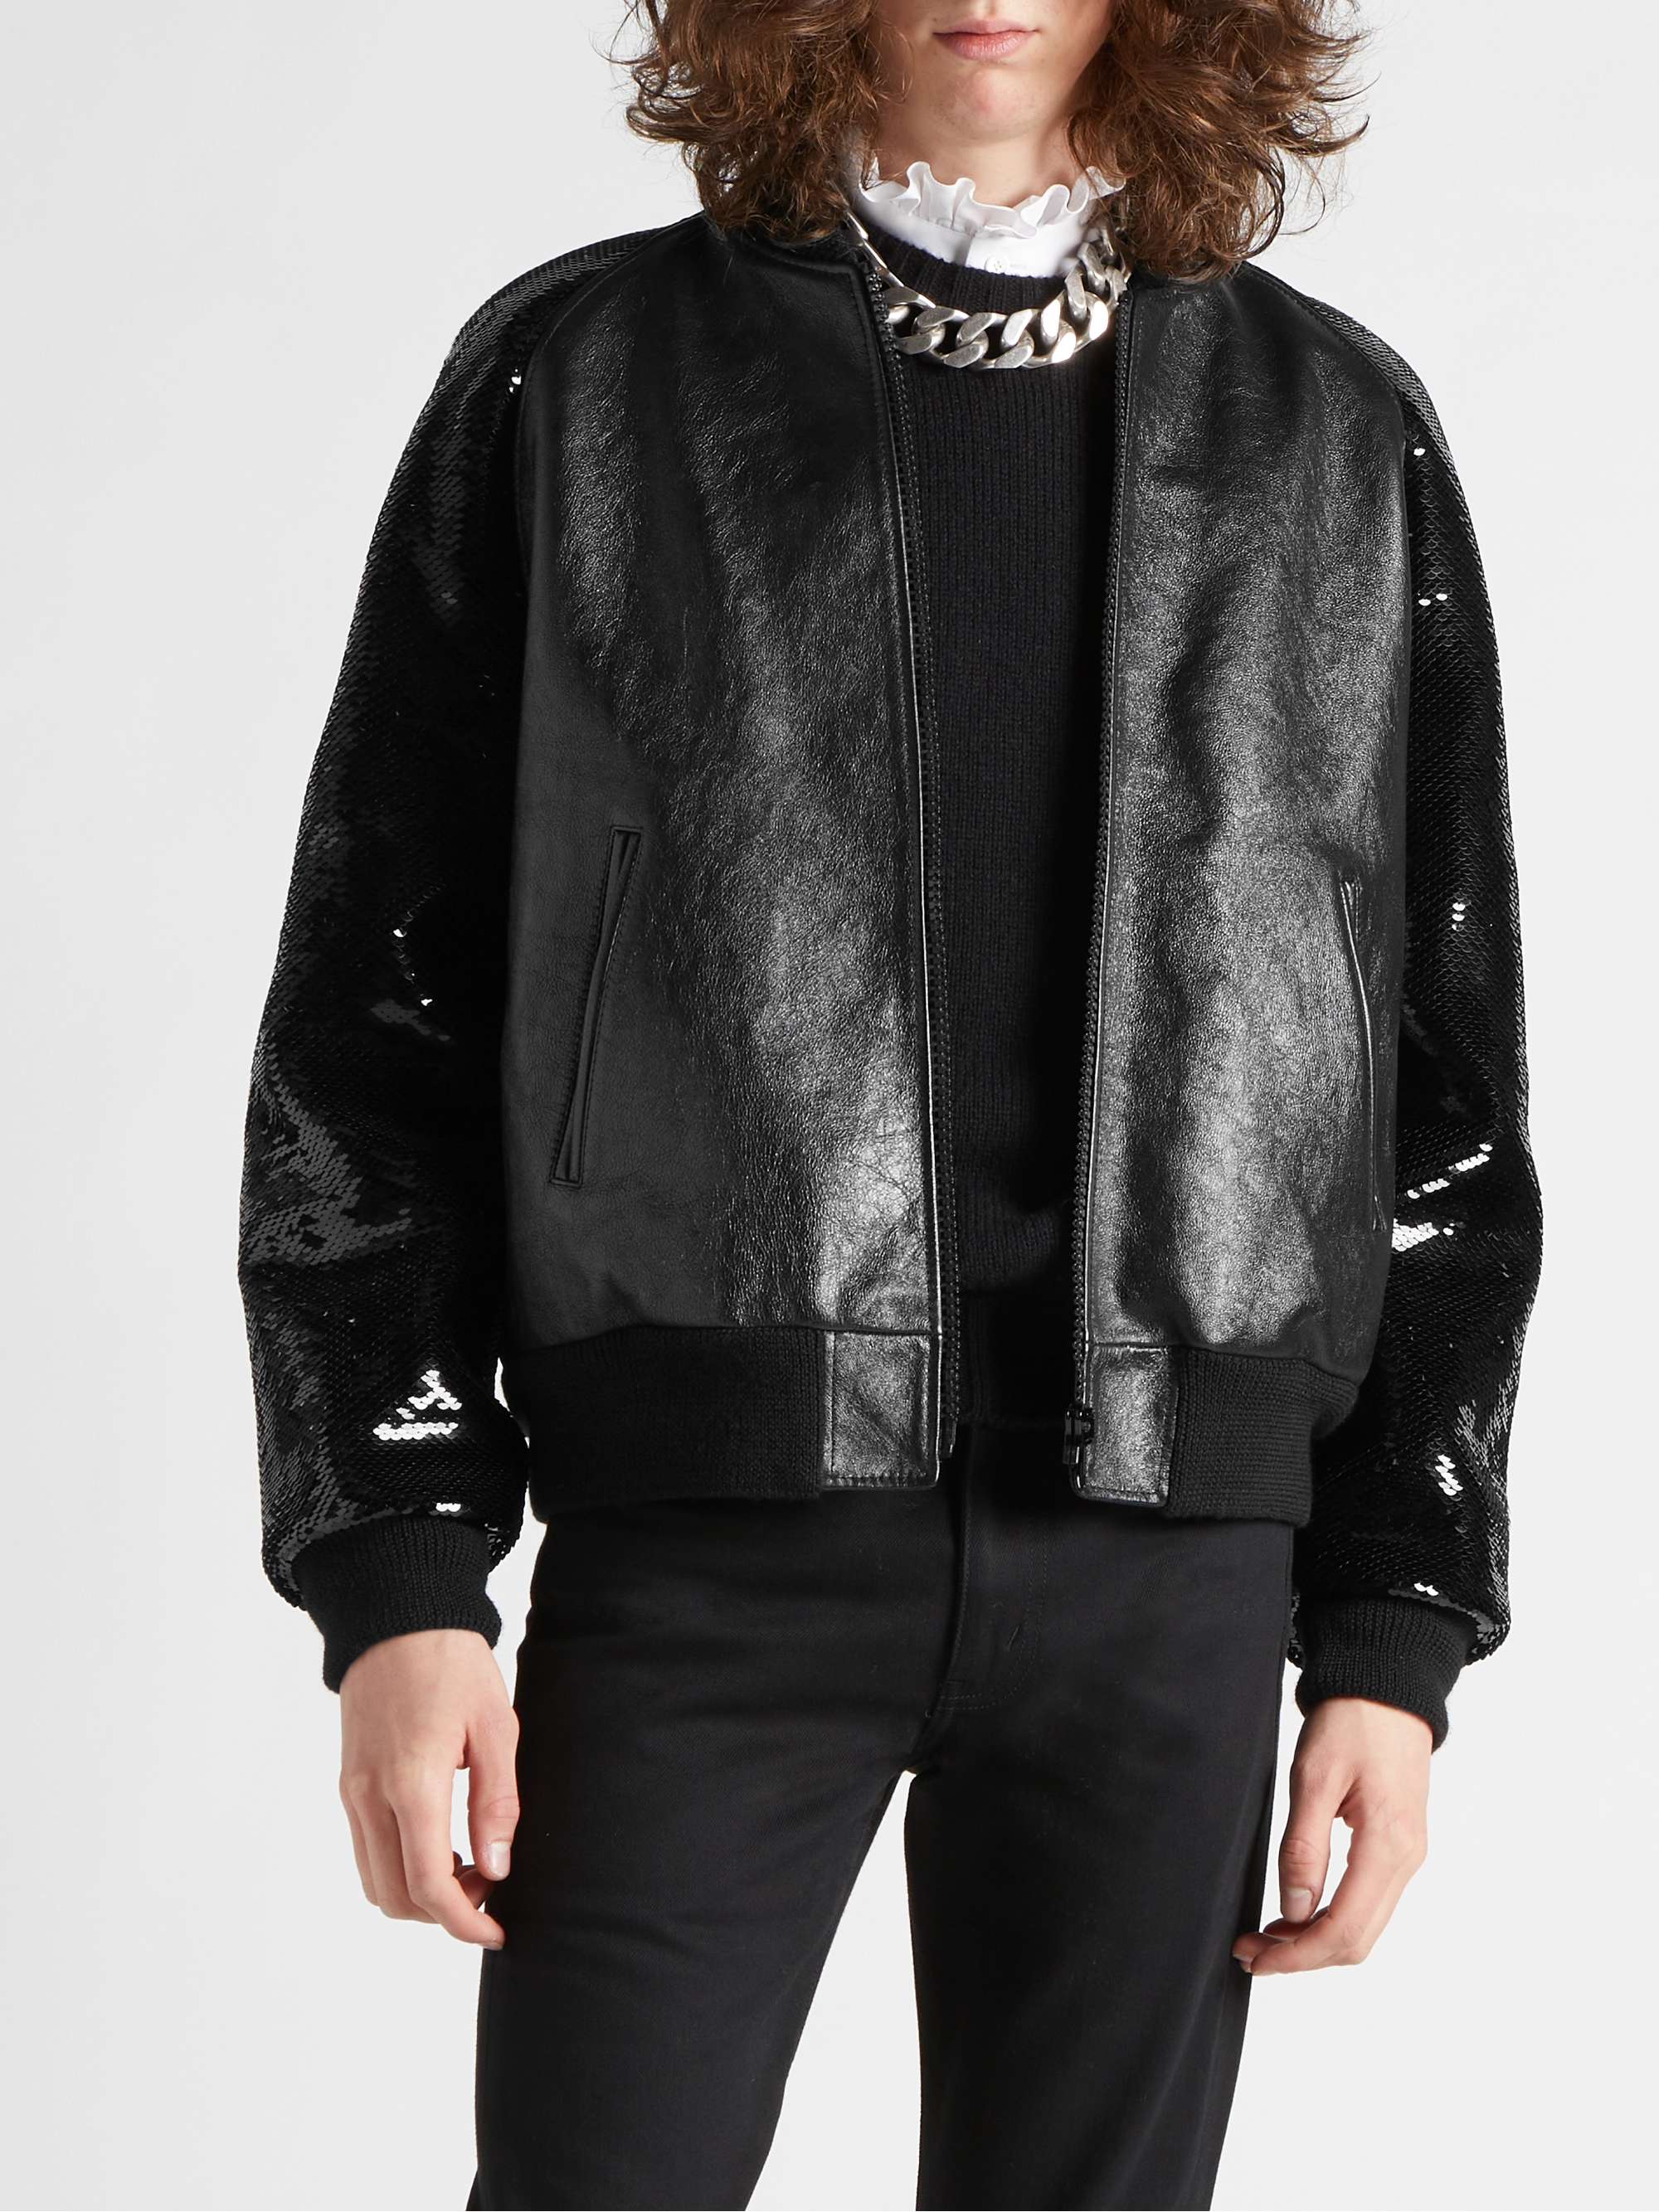 CELINE HOMME Sequin-Embellished Leather Blouson Jacket